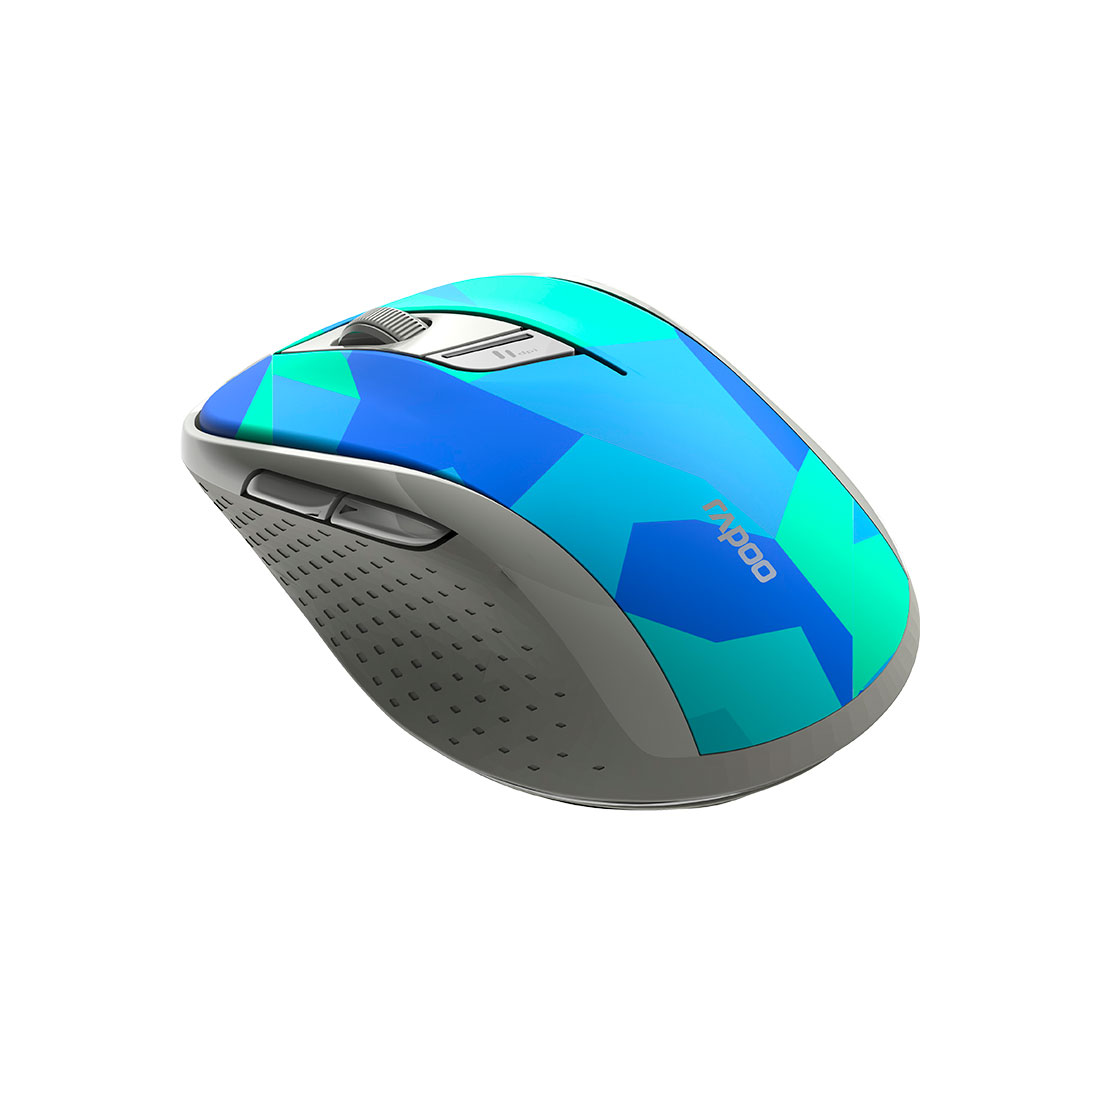 Компьютерная мышь Rapoo M500 Silent Blue